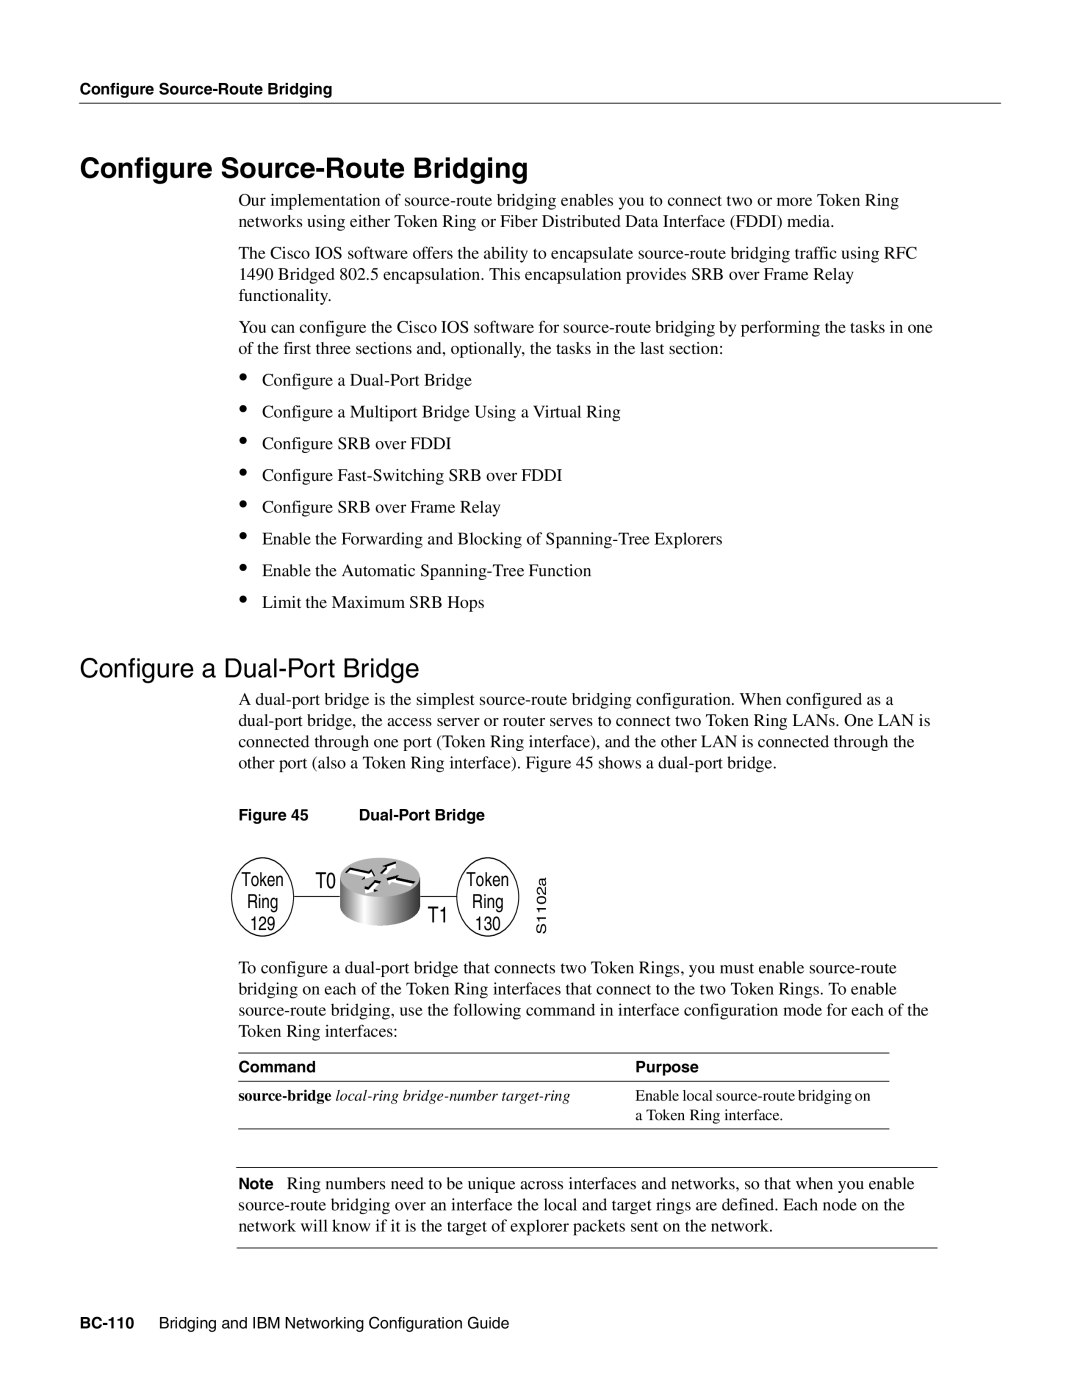 Cisco Systems BC-109 manual Configure Source-Route Bridging, Configure a Dual-Port Bridge 